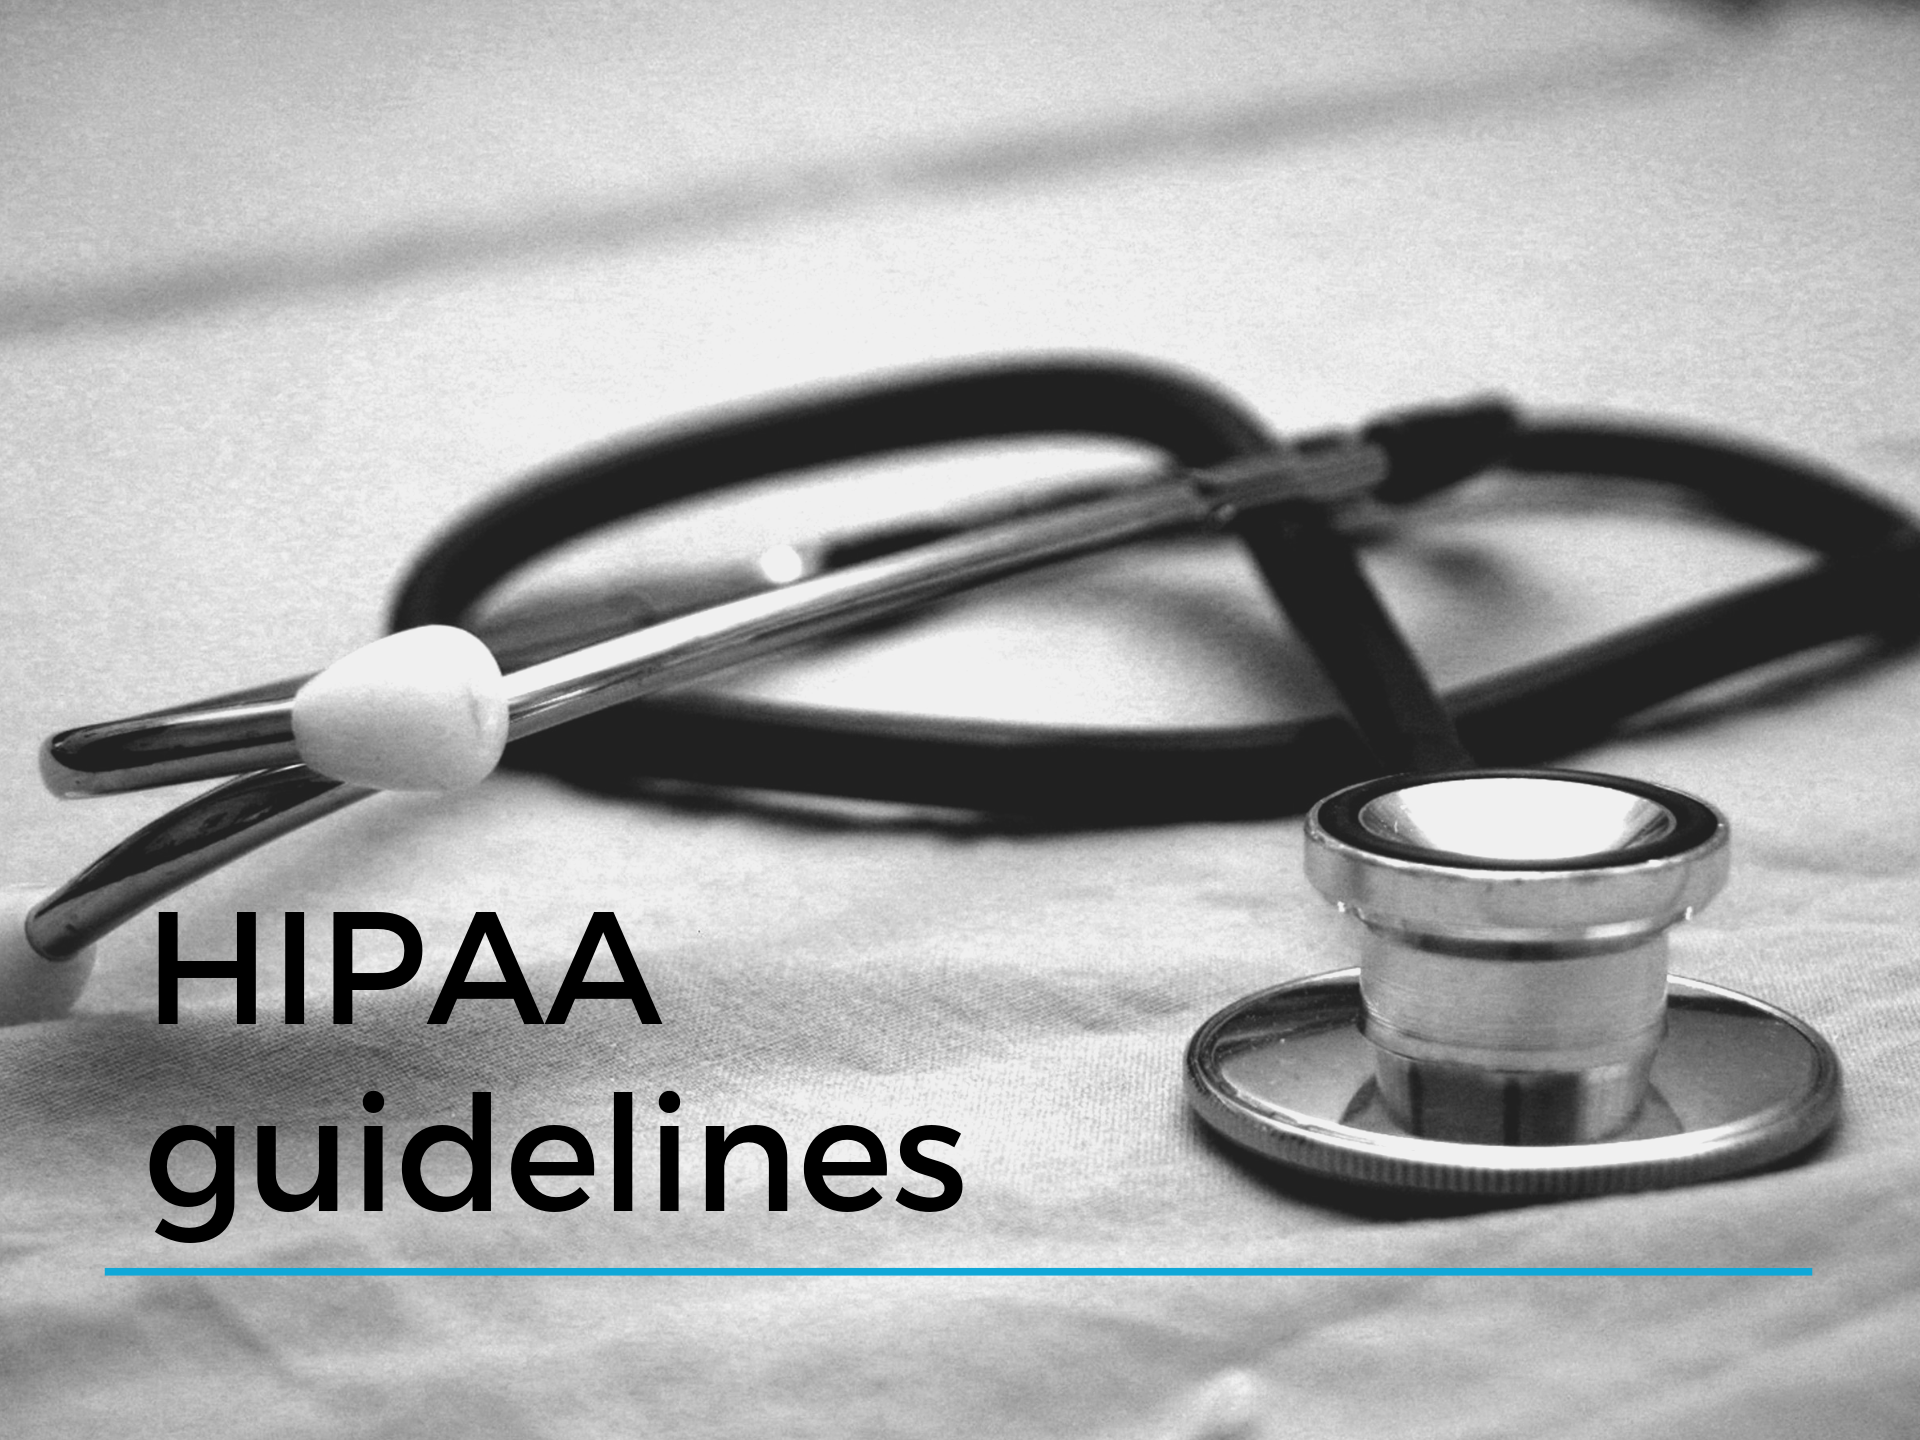 HIPAA guidelines